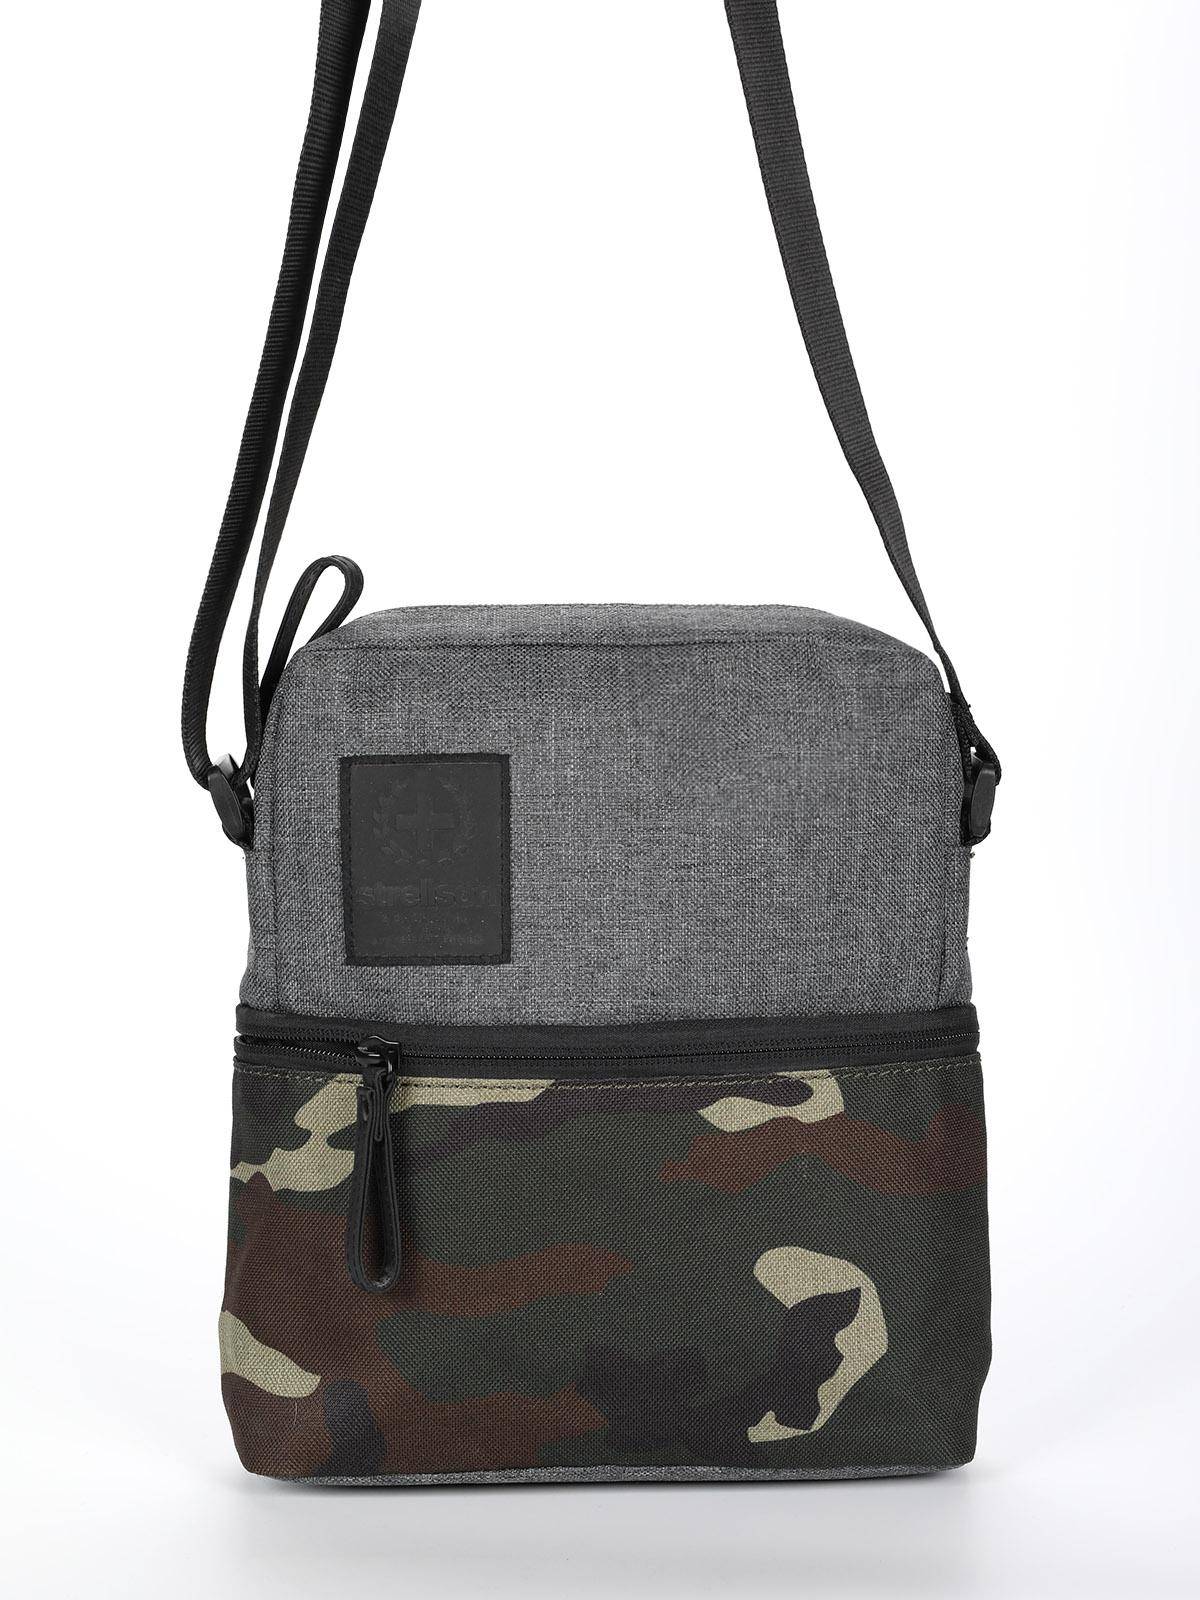 Городская сумка Strellson Bags Swiss cross 2 shoulderbag xsvz 4010002437, цвет серый, размер ONE SIZE - фото 2